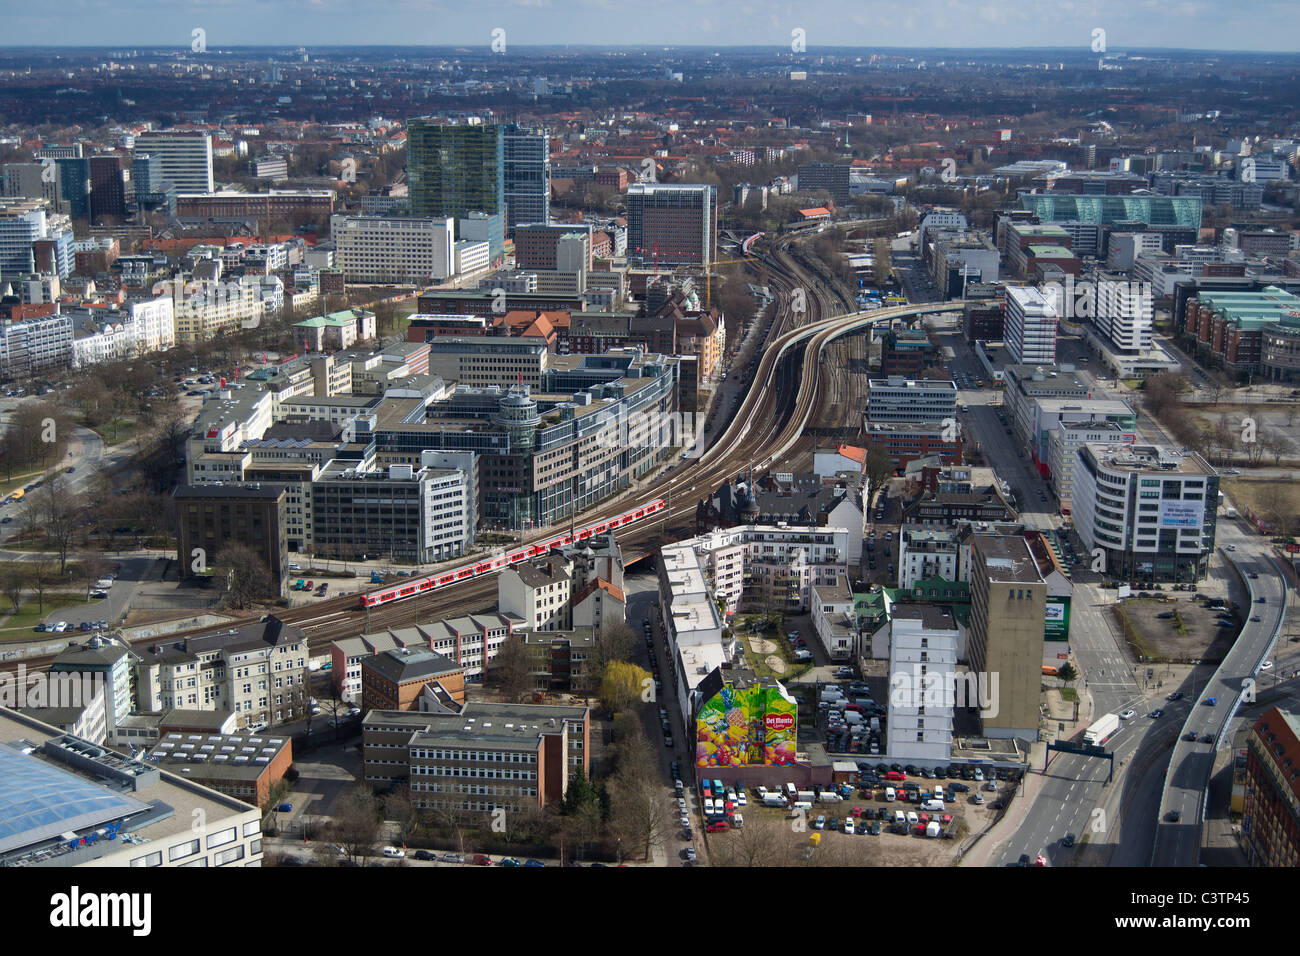 Hambourg, Allemagne, vue aérienne, Hafencity, fleuve d'Elbe Banque D'Images